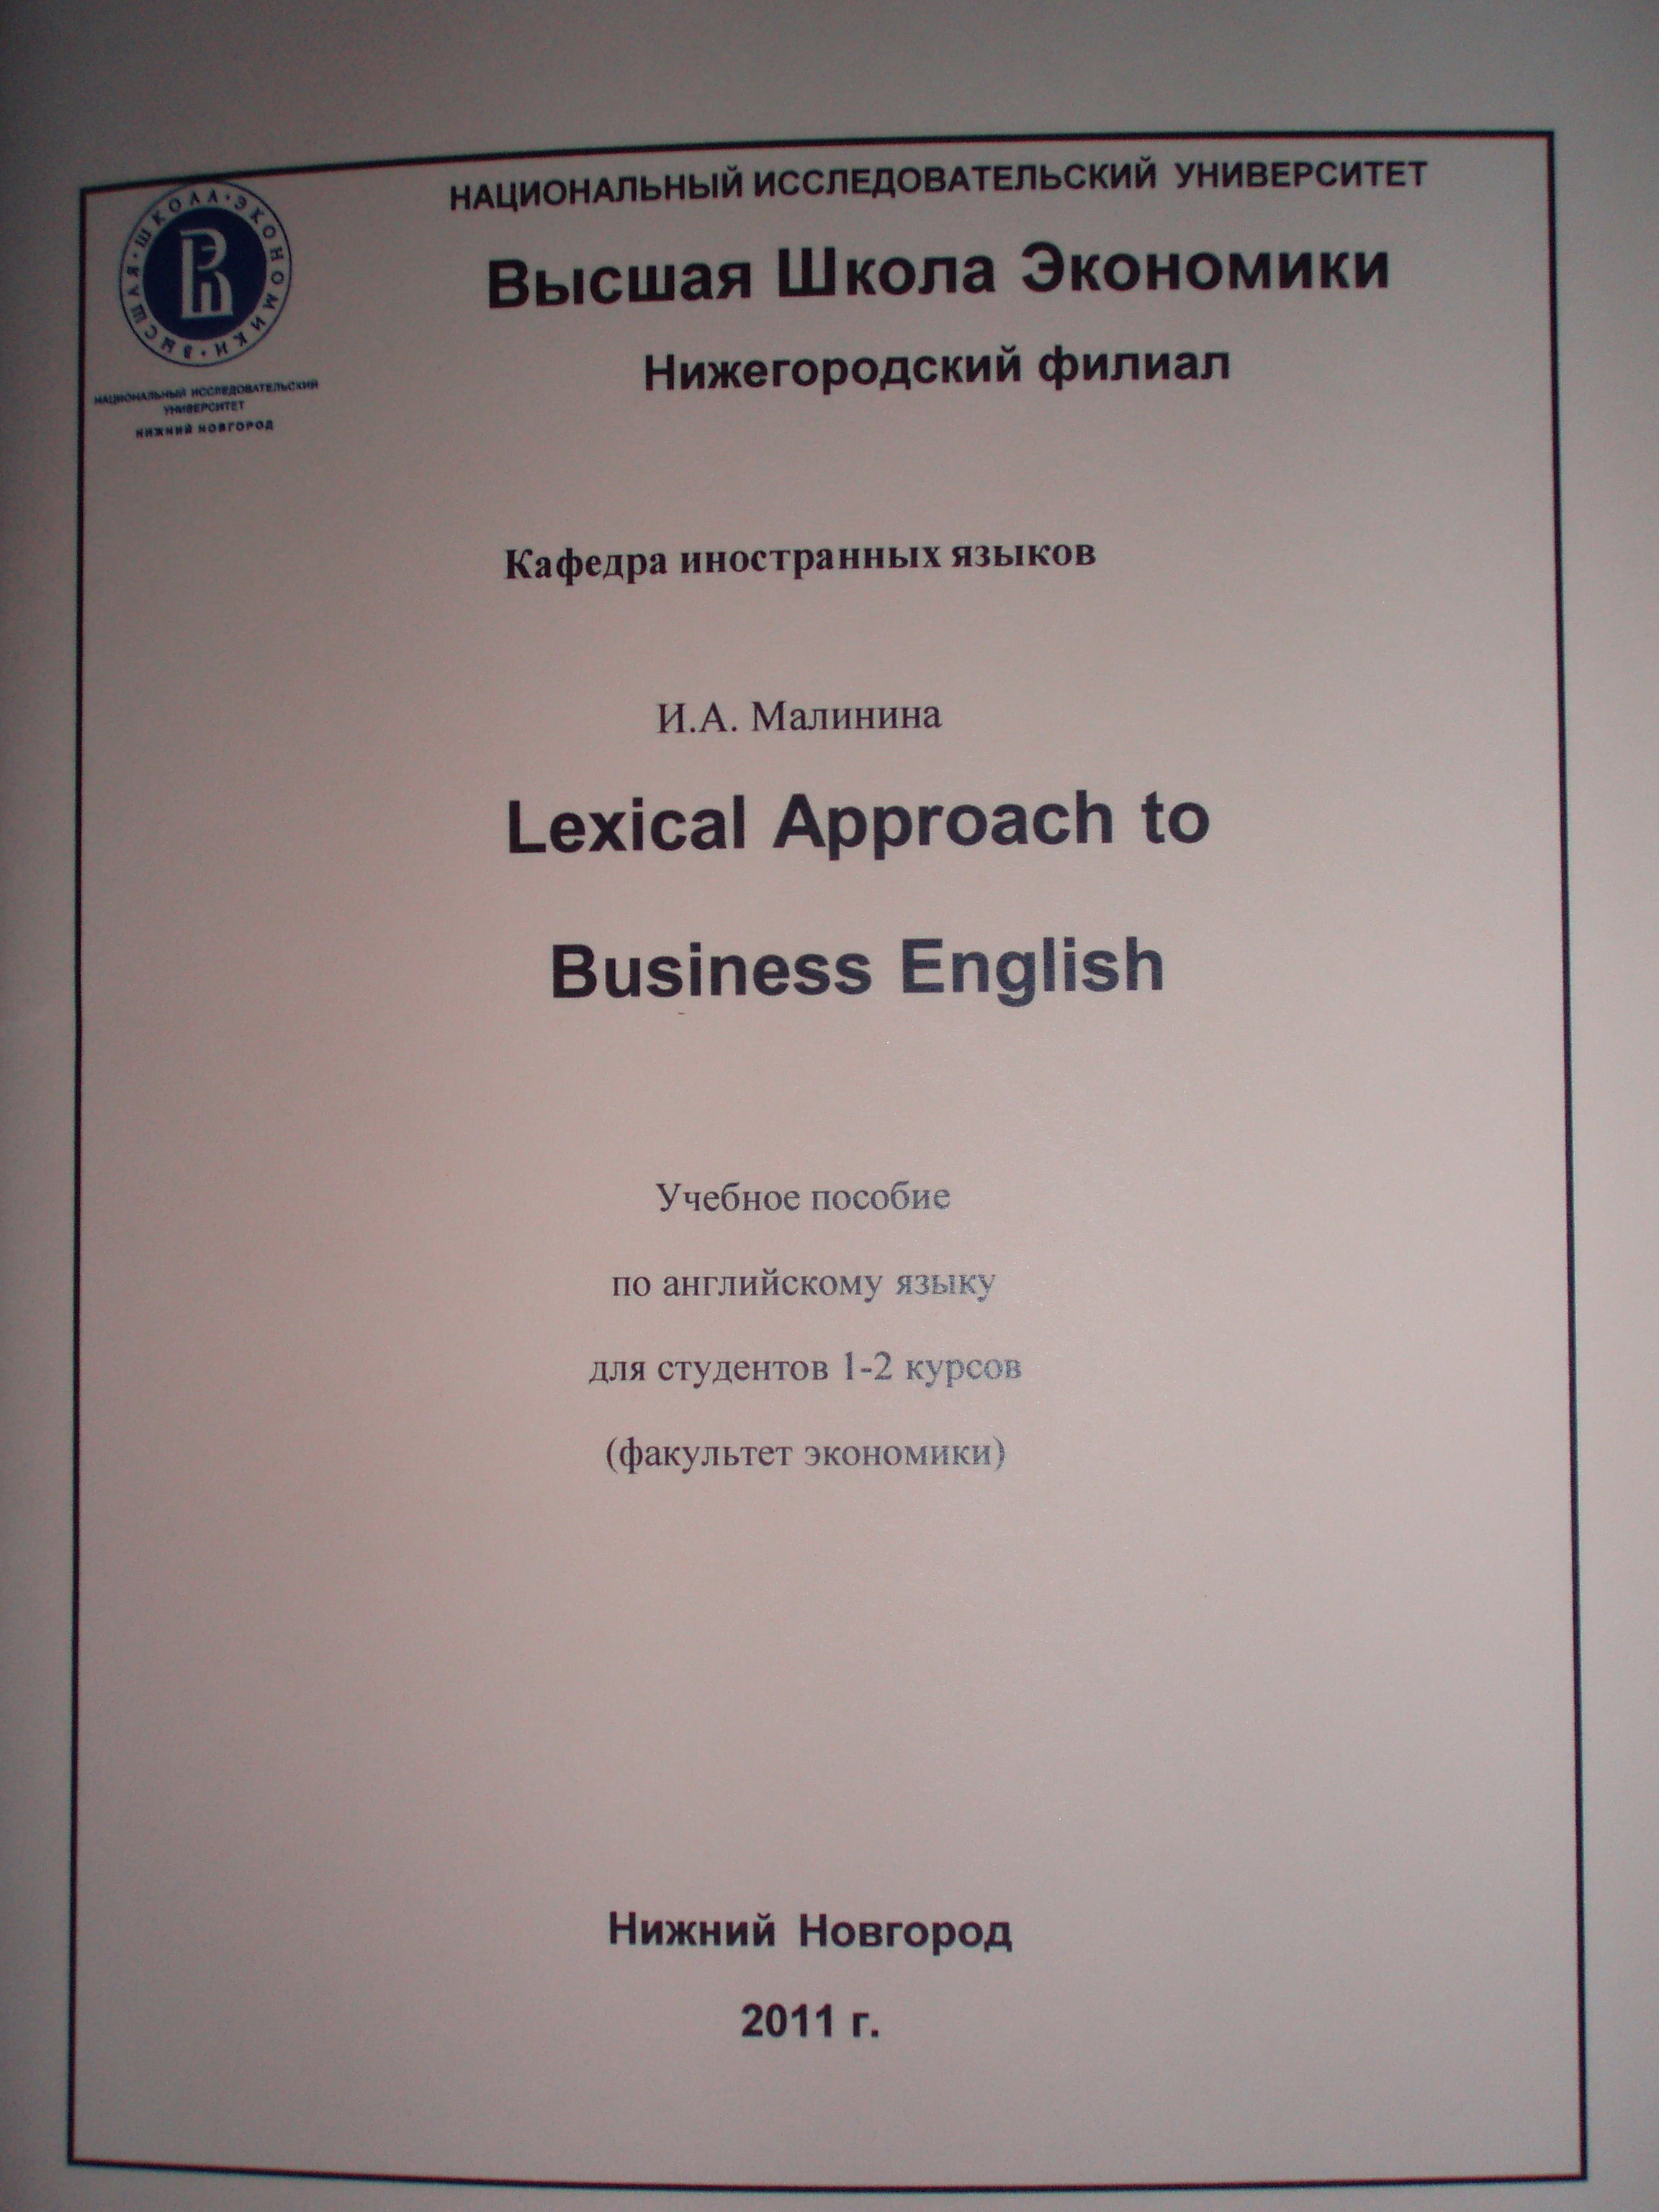 Lexical Approach to Business English: Учебное пособие по английскому языку для студентов 1-2 курсов обучения